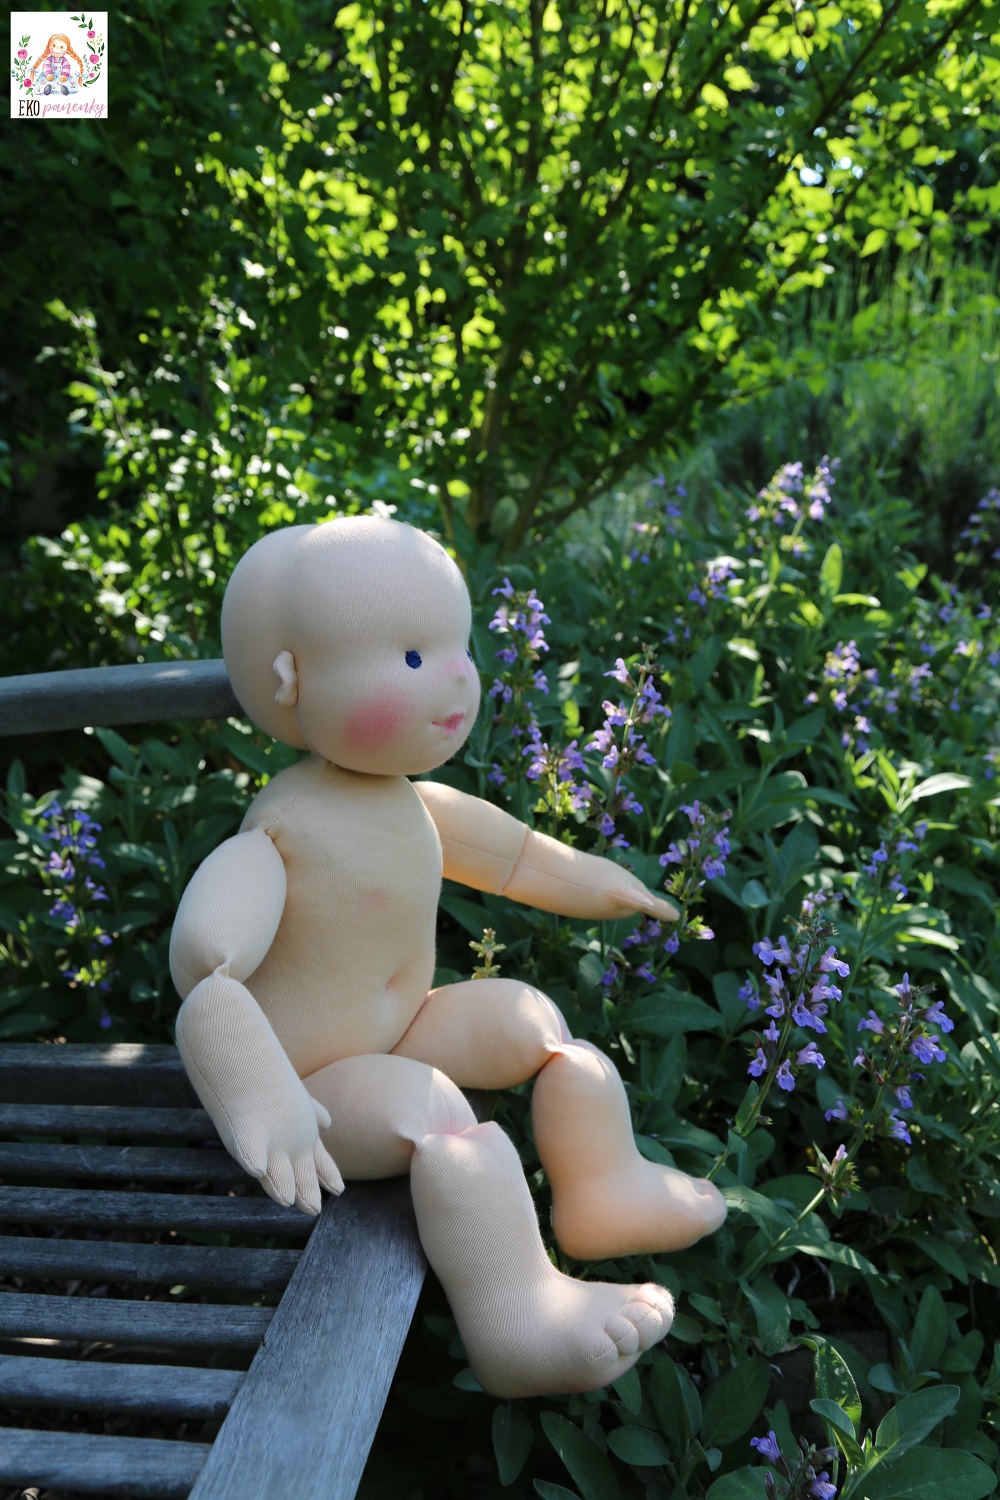 Demo panenka je holčička a umí sama pěkně sedět. 60 cm vysoká demonstrační figurína ručně šitá. ekopanenky.cz/ekopanenky-2